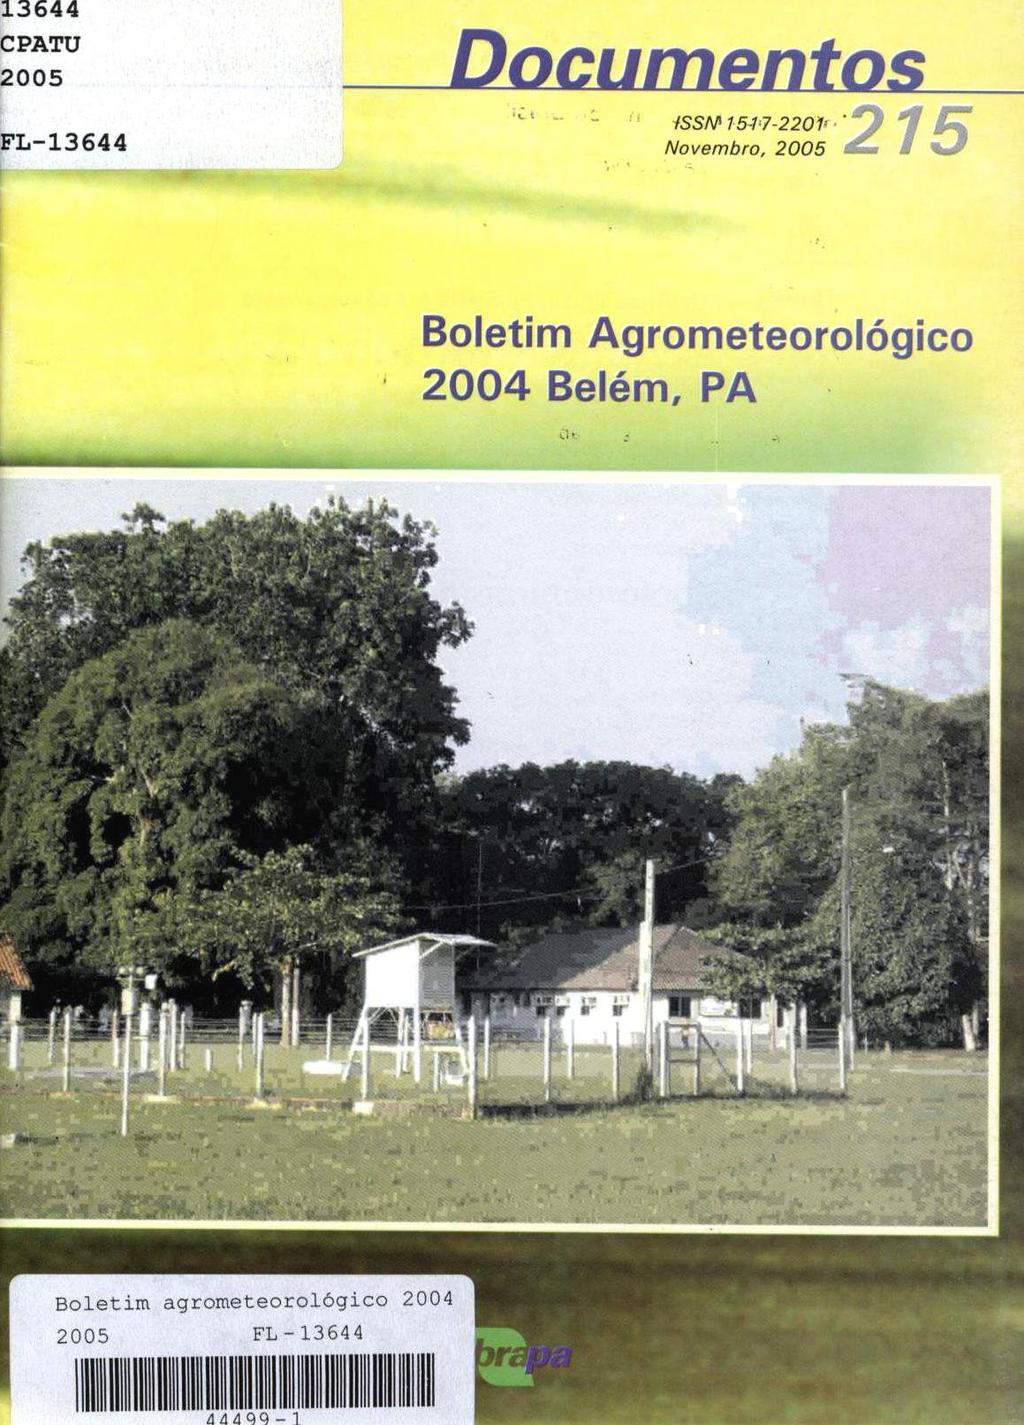 Boletim agrometeorológico 2004 2C [T 3644 IlII II IID III IDI IIID Ill IID IIIIII 13644 CPATU Documentos